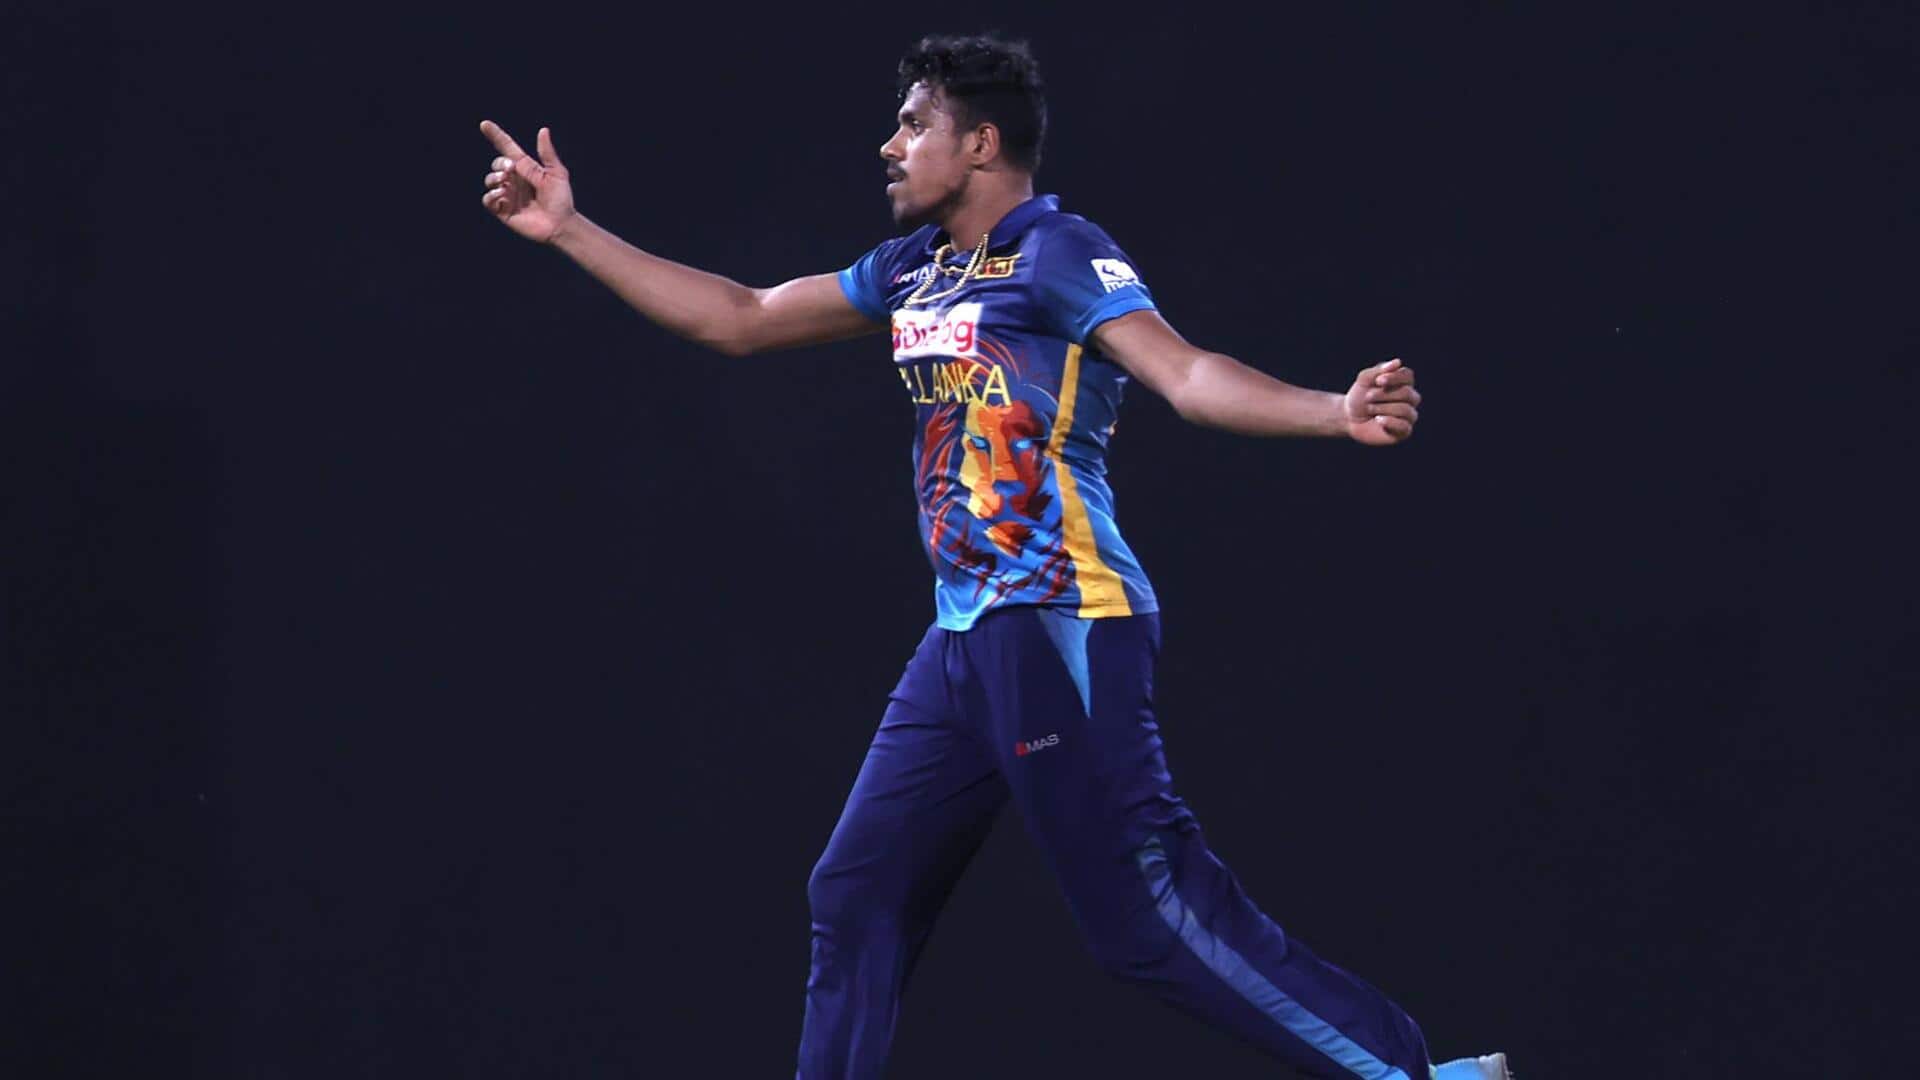 श्रीलंका बनाम बांग्लादेश: महेश तीक्षाना और मथीशा पथिराना ने झटके 3-3 विकेट, जानिए उनके आंकड़े